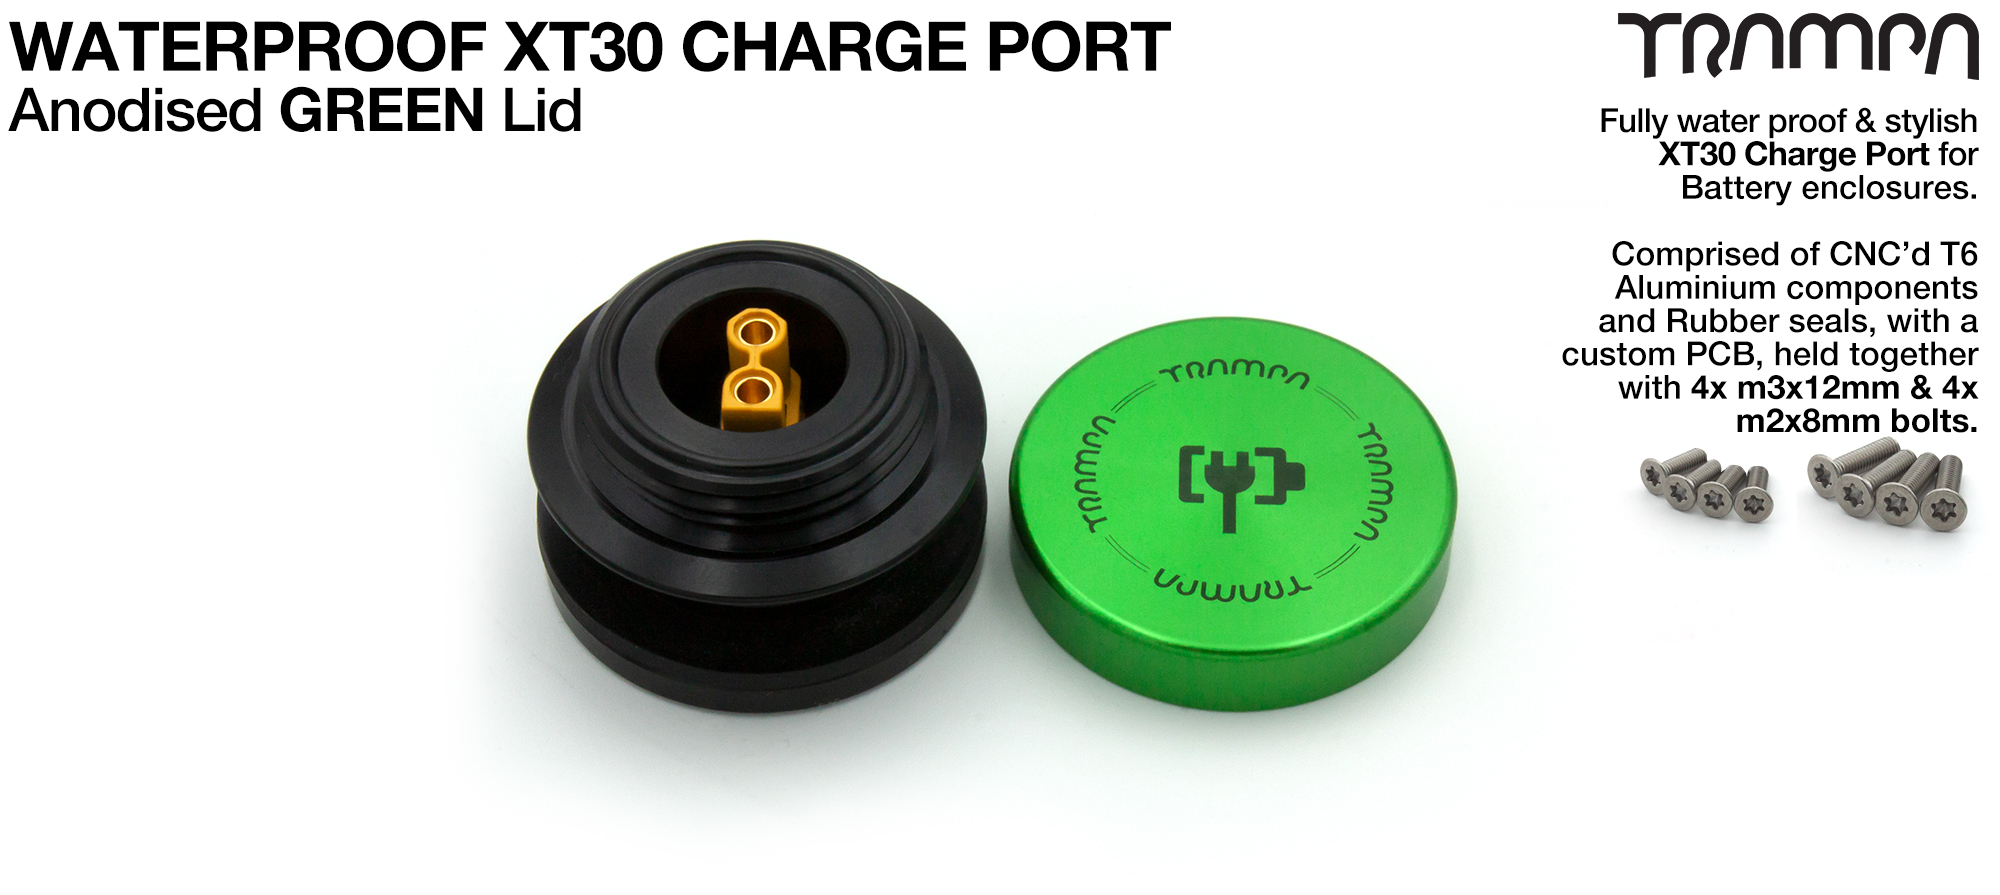 ORRSOM GT XT30 WATERPROOF Charge Port - GREEN